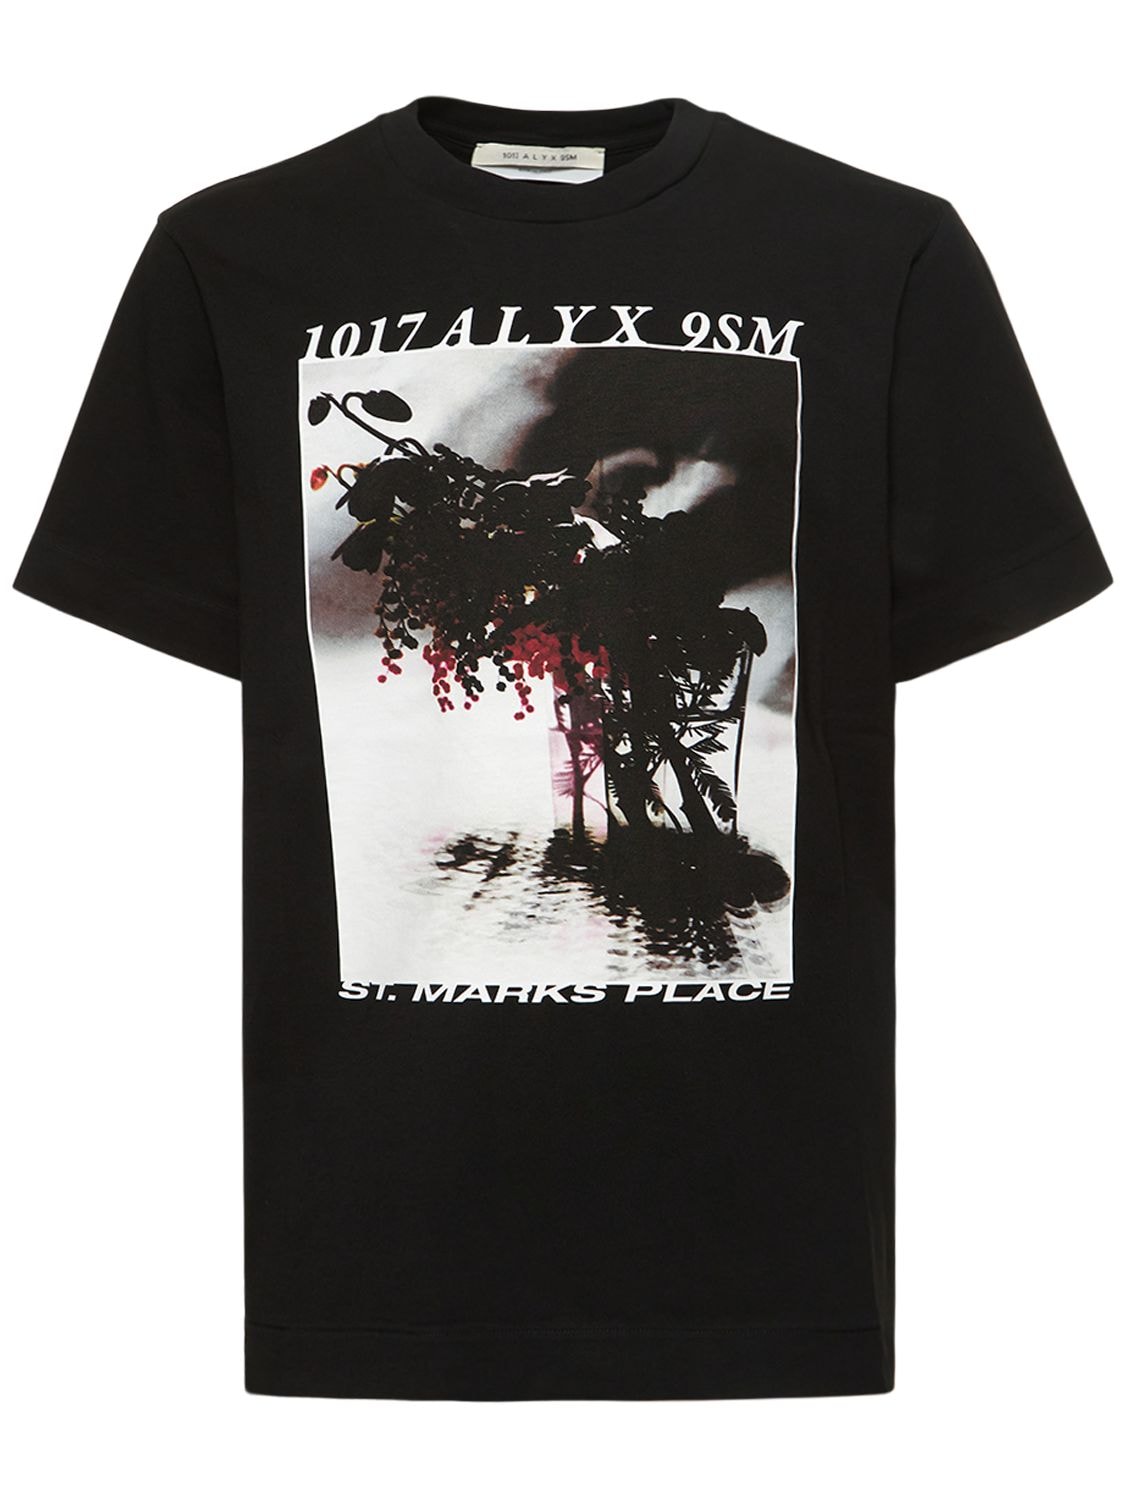 Hombre Camiseta De Algodón Con Estampado S - 1017 ALYX 9SM - Modalova